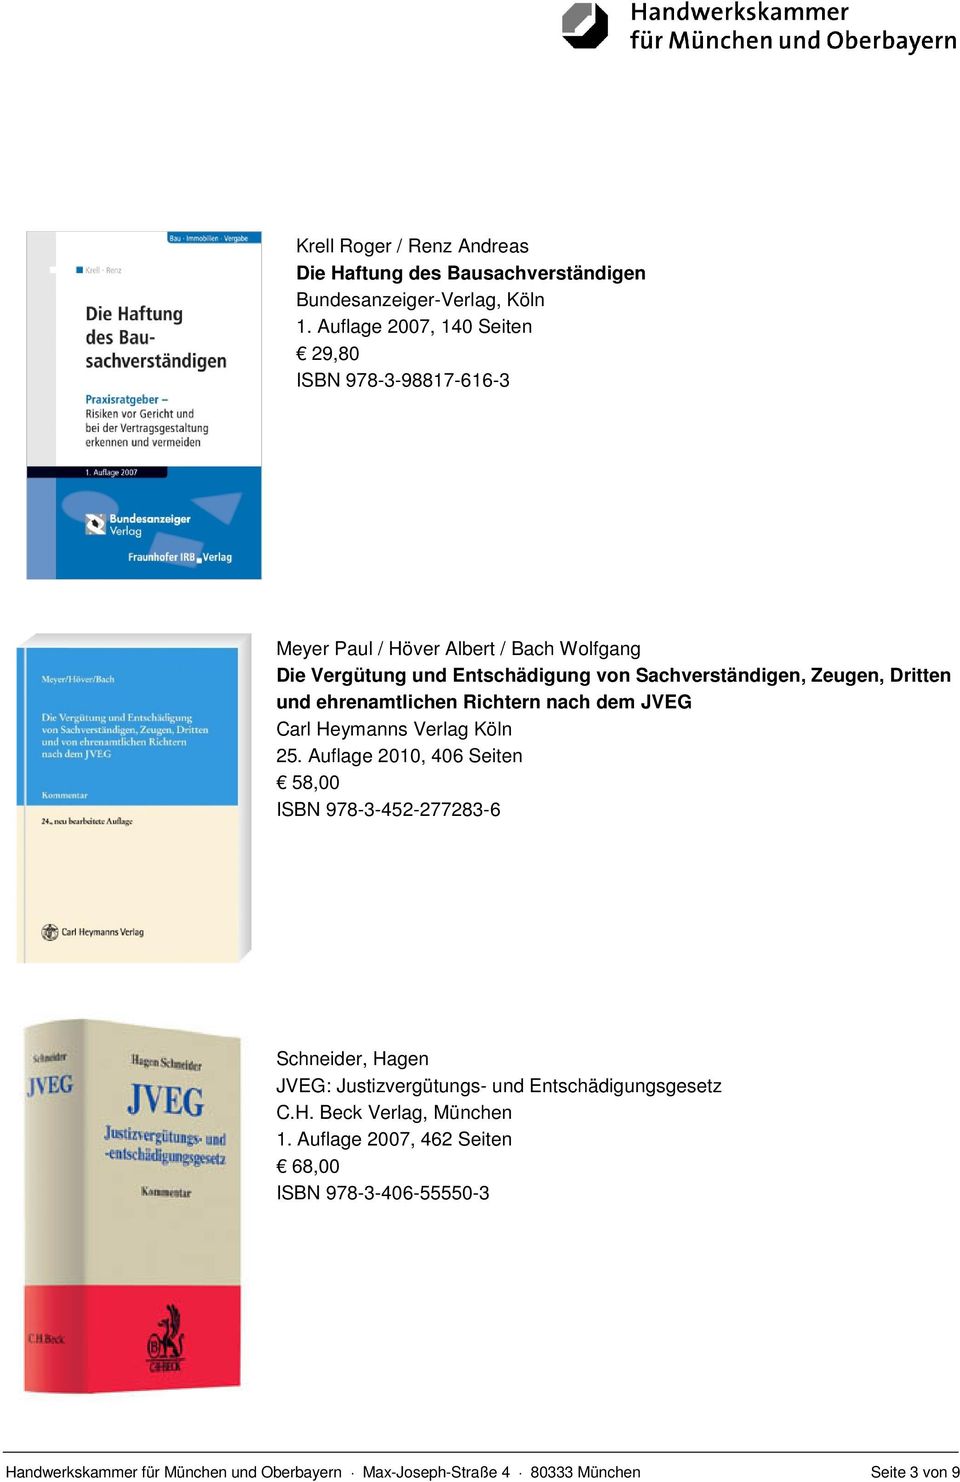 Zeugen, Dritten und ehrenamtlichen Richtern nach dem JVEG Carl Heymanns Verlag Köln 25.